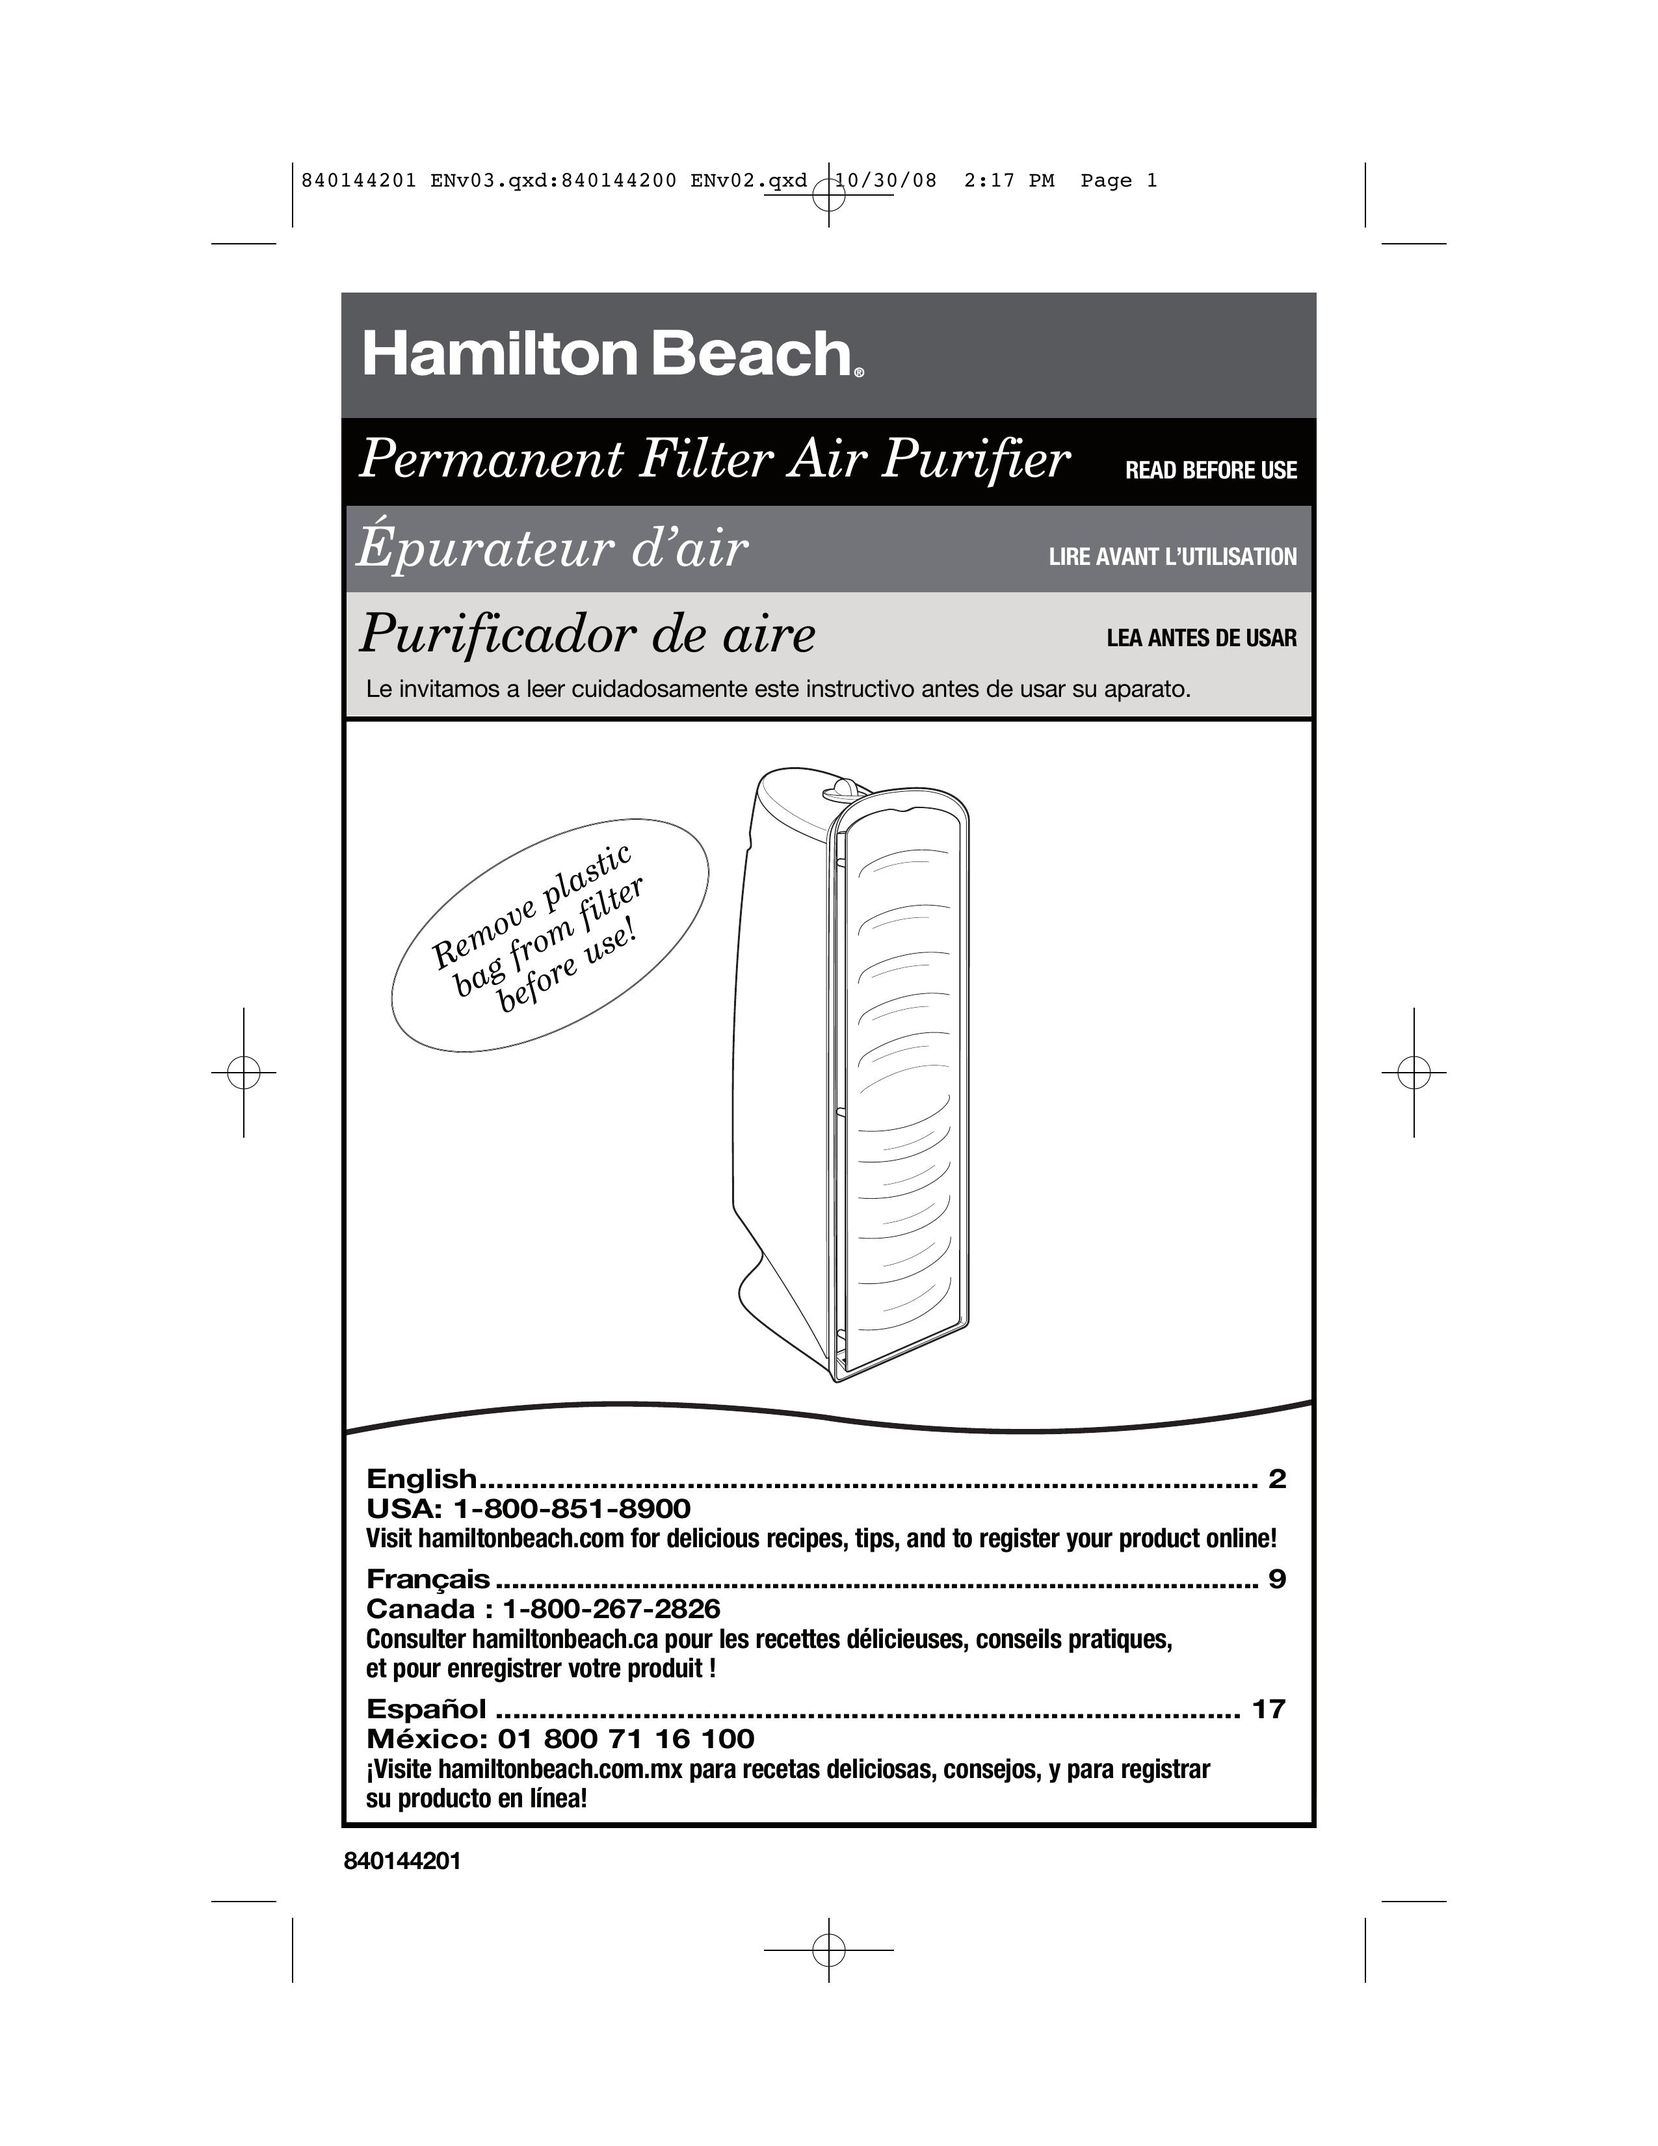 Hamilton Beach 840144201 Air Cleaner User Manual